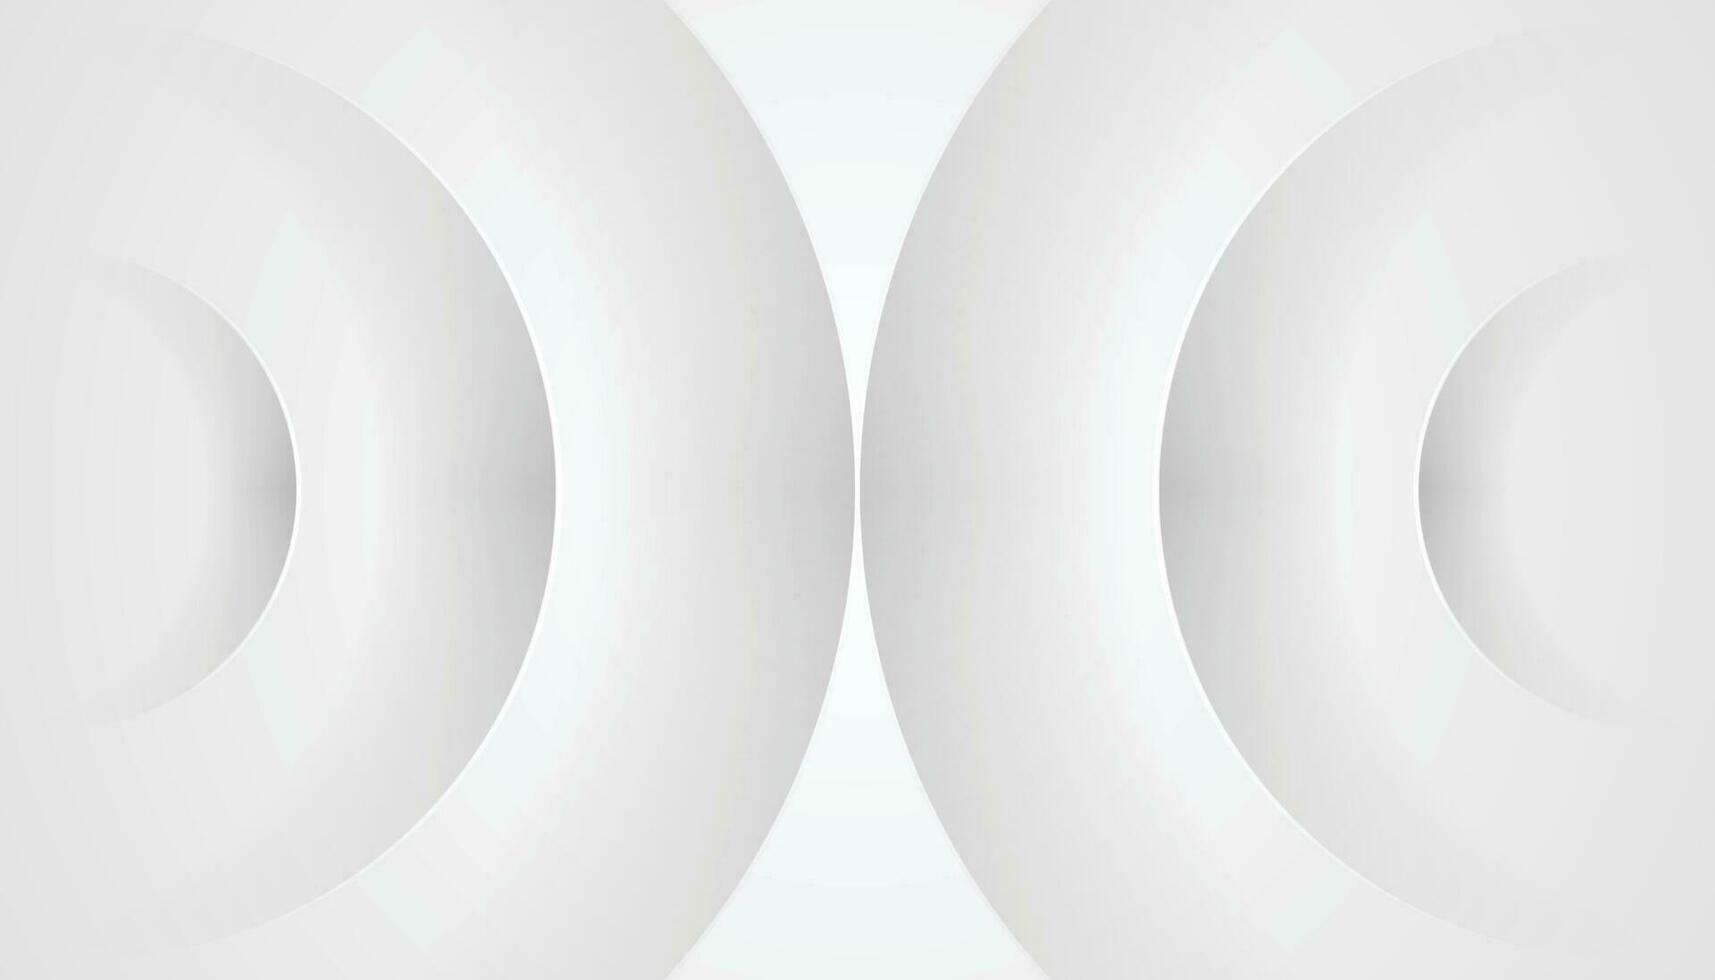 abstrakt Weiß grau Kreise Hintergrund mit Luxus Stil. futuristisch kreisförmig Hintergrund. Vektor Illustration